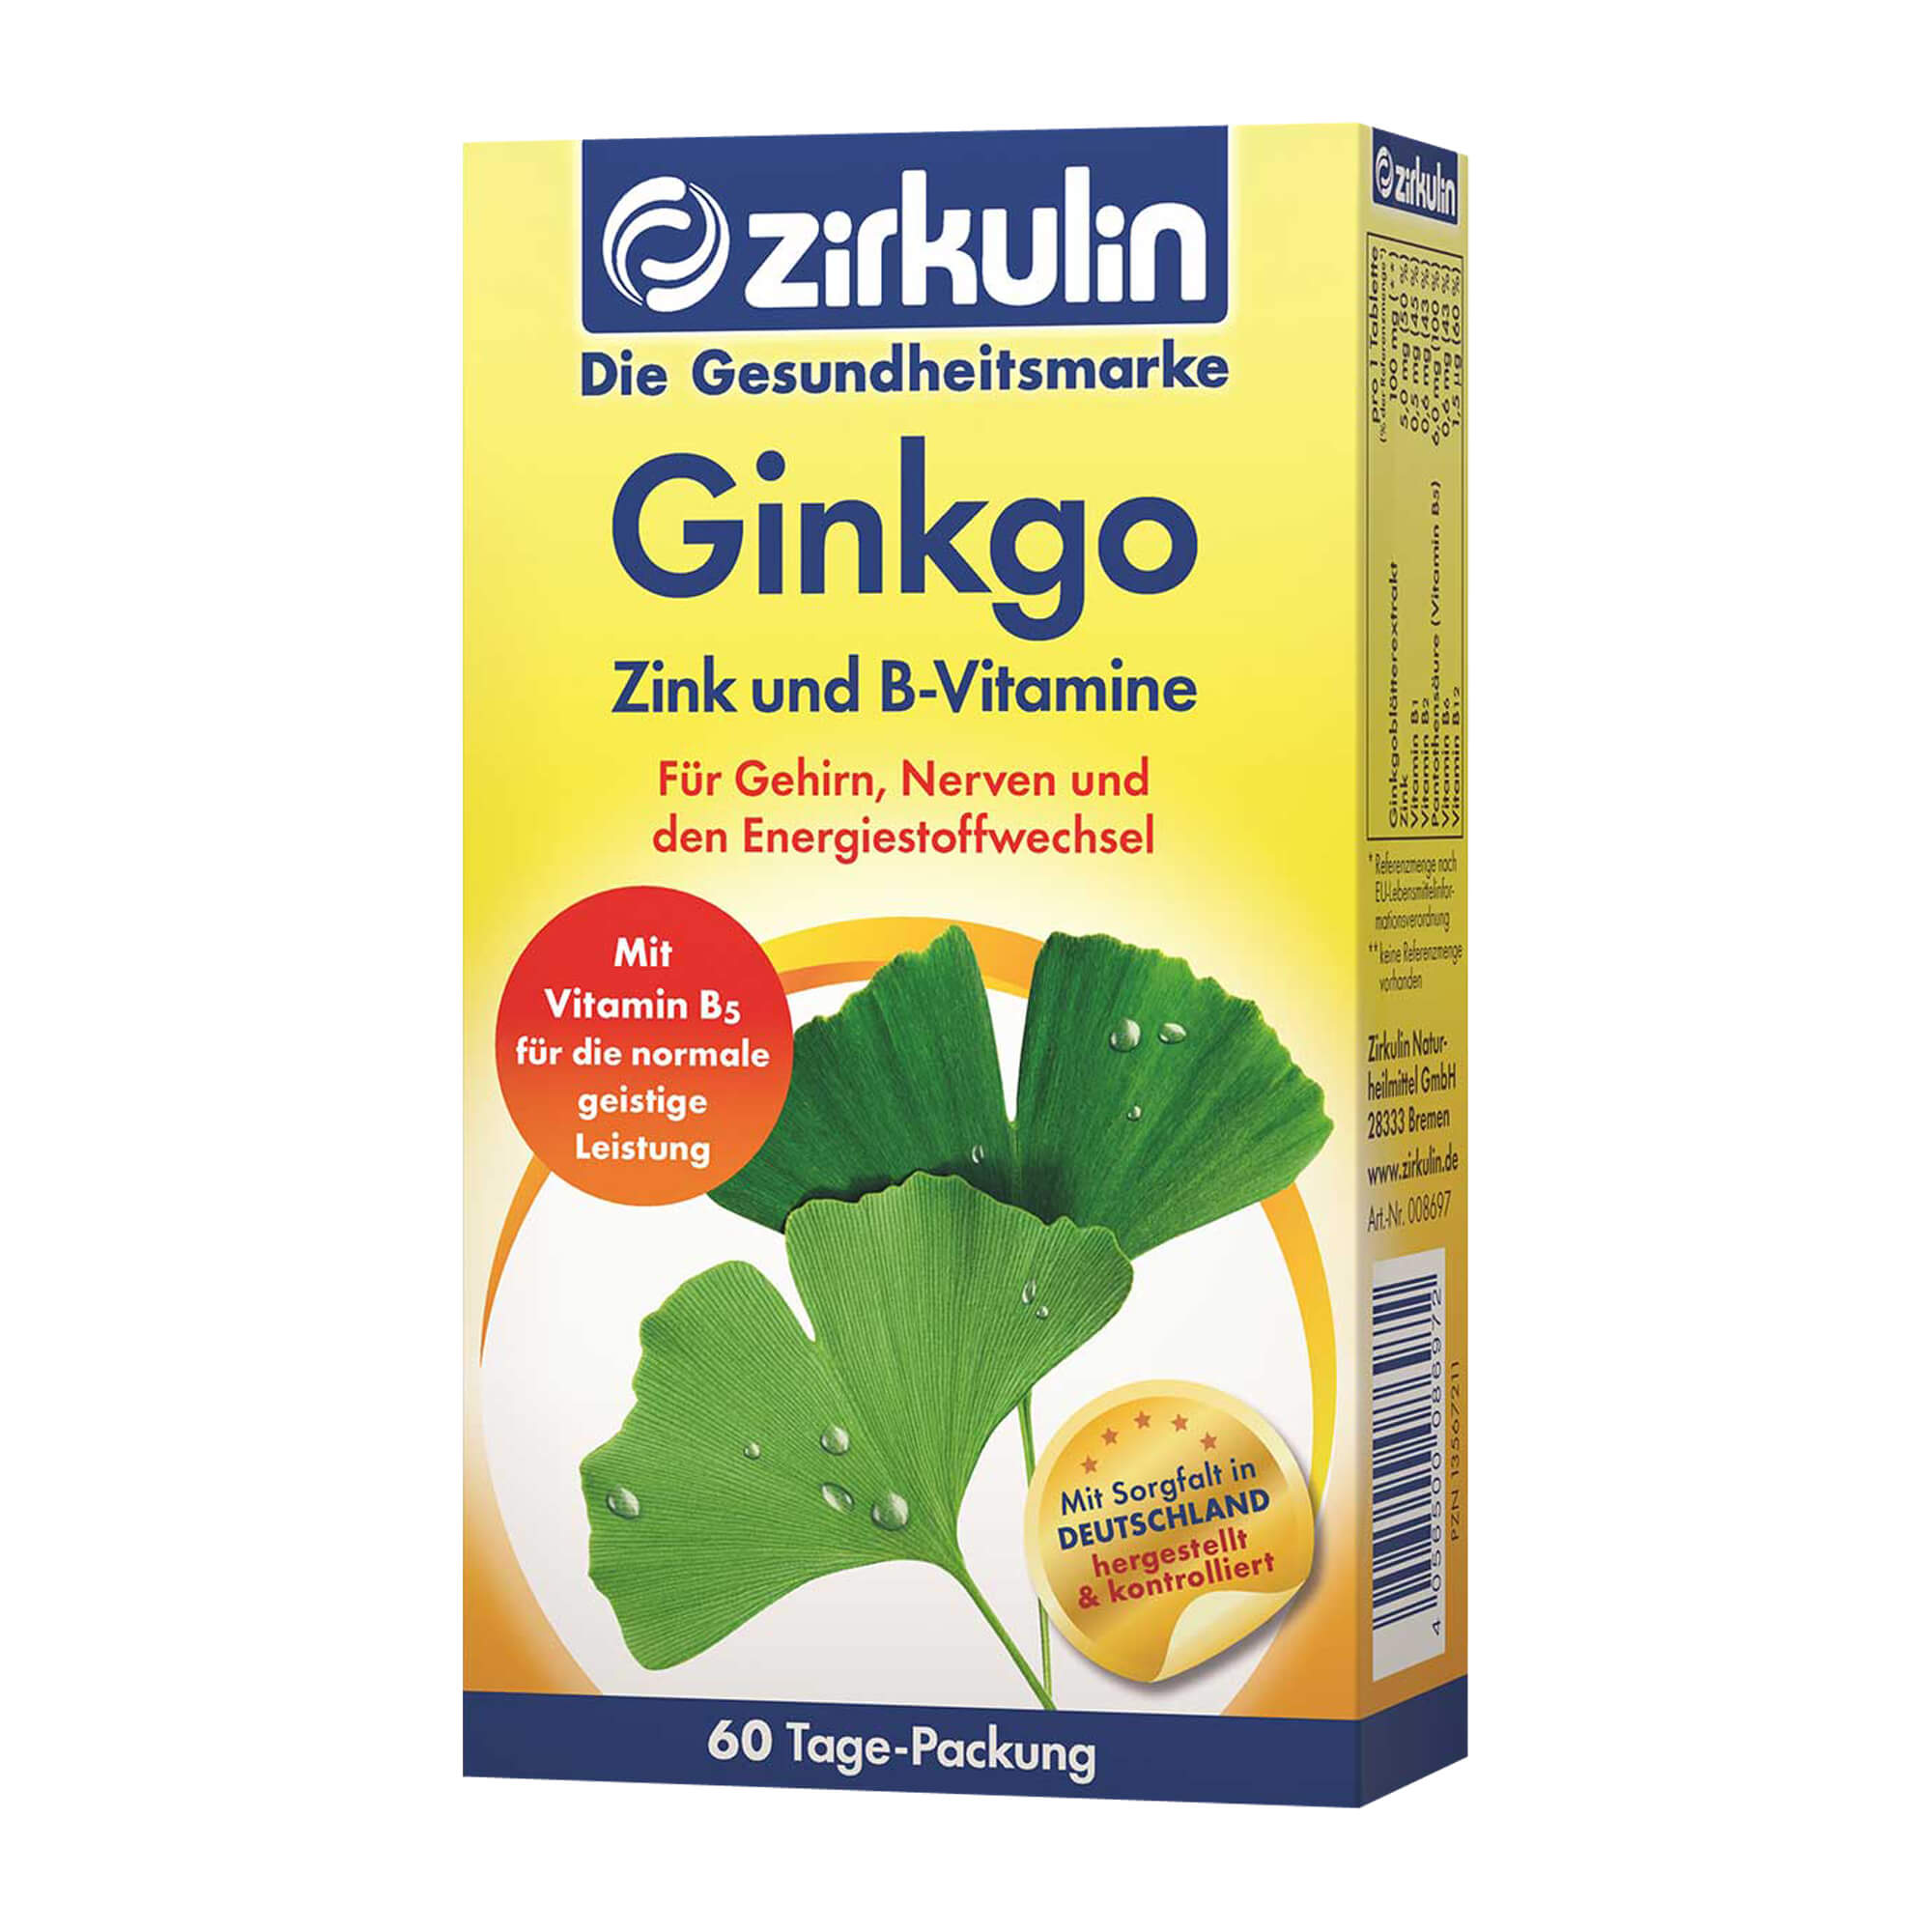 Nahrungsergänzungsmittel mit Ginkgo, Zink und B-Vitaminen.